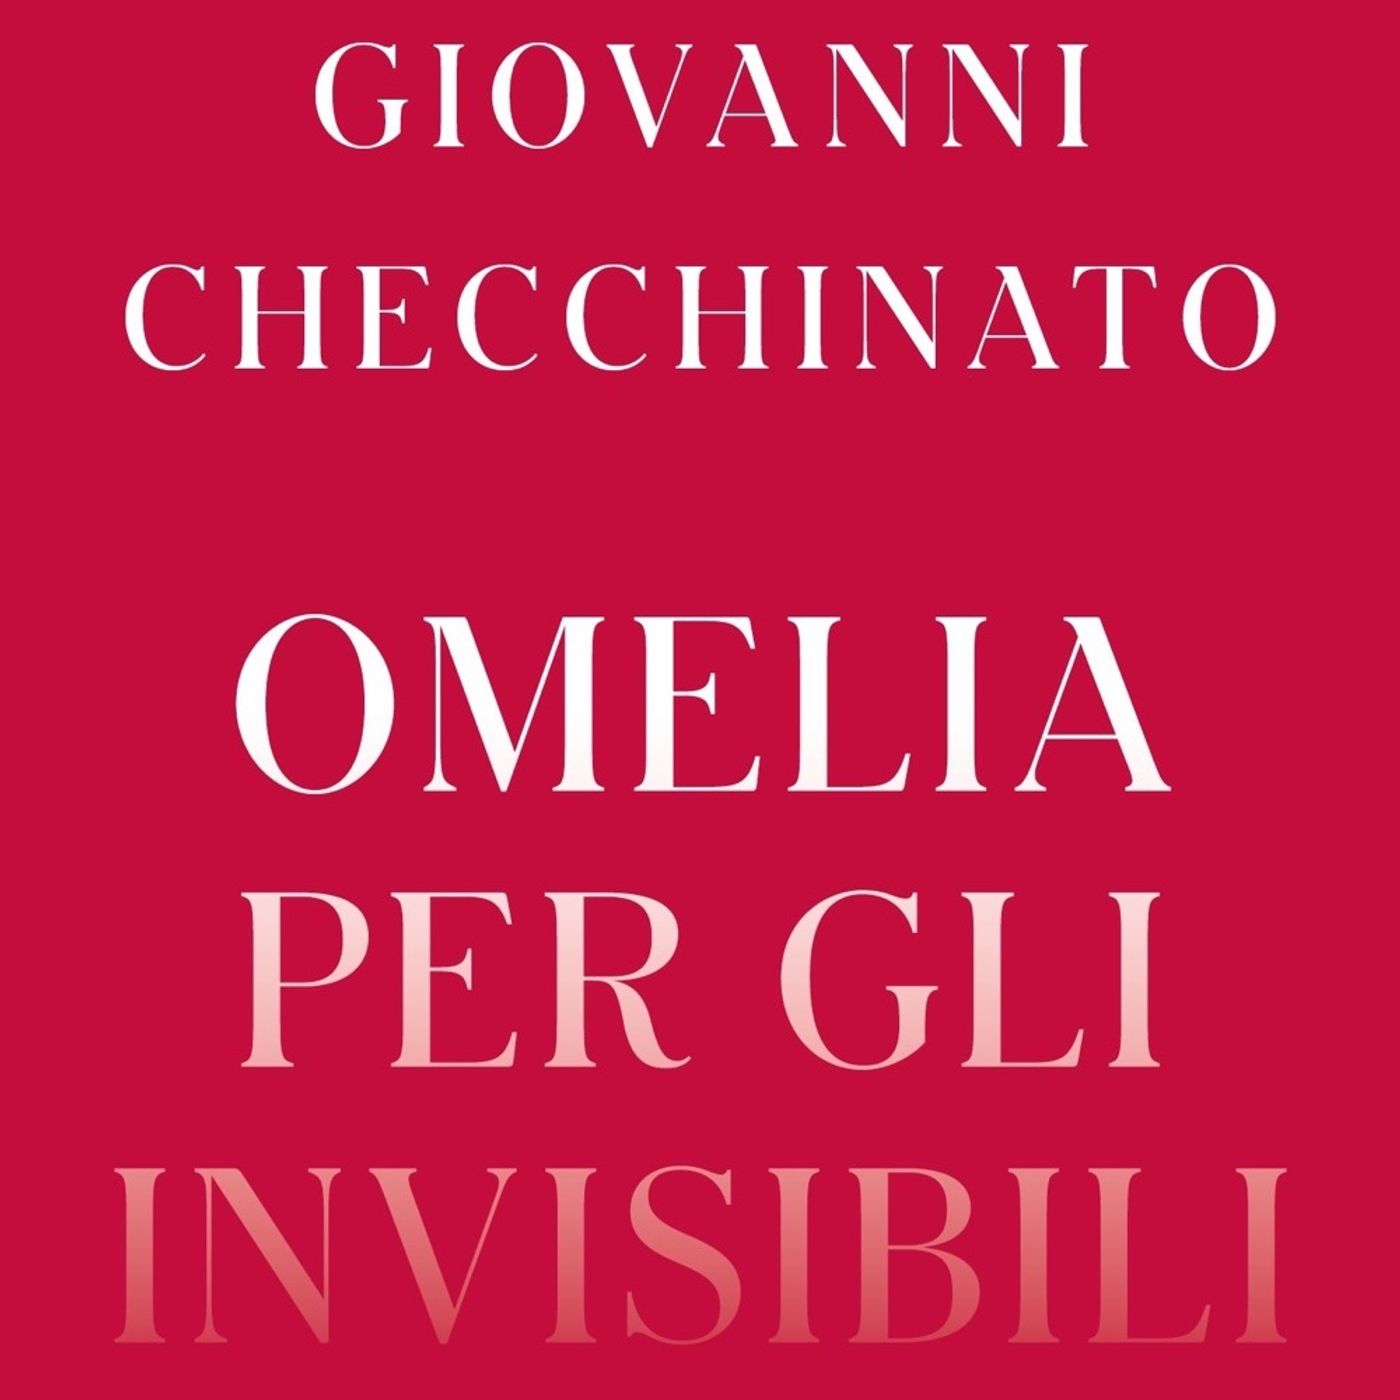 Giovanni Checchinato "Omelia per gli invisibili"